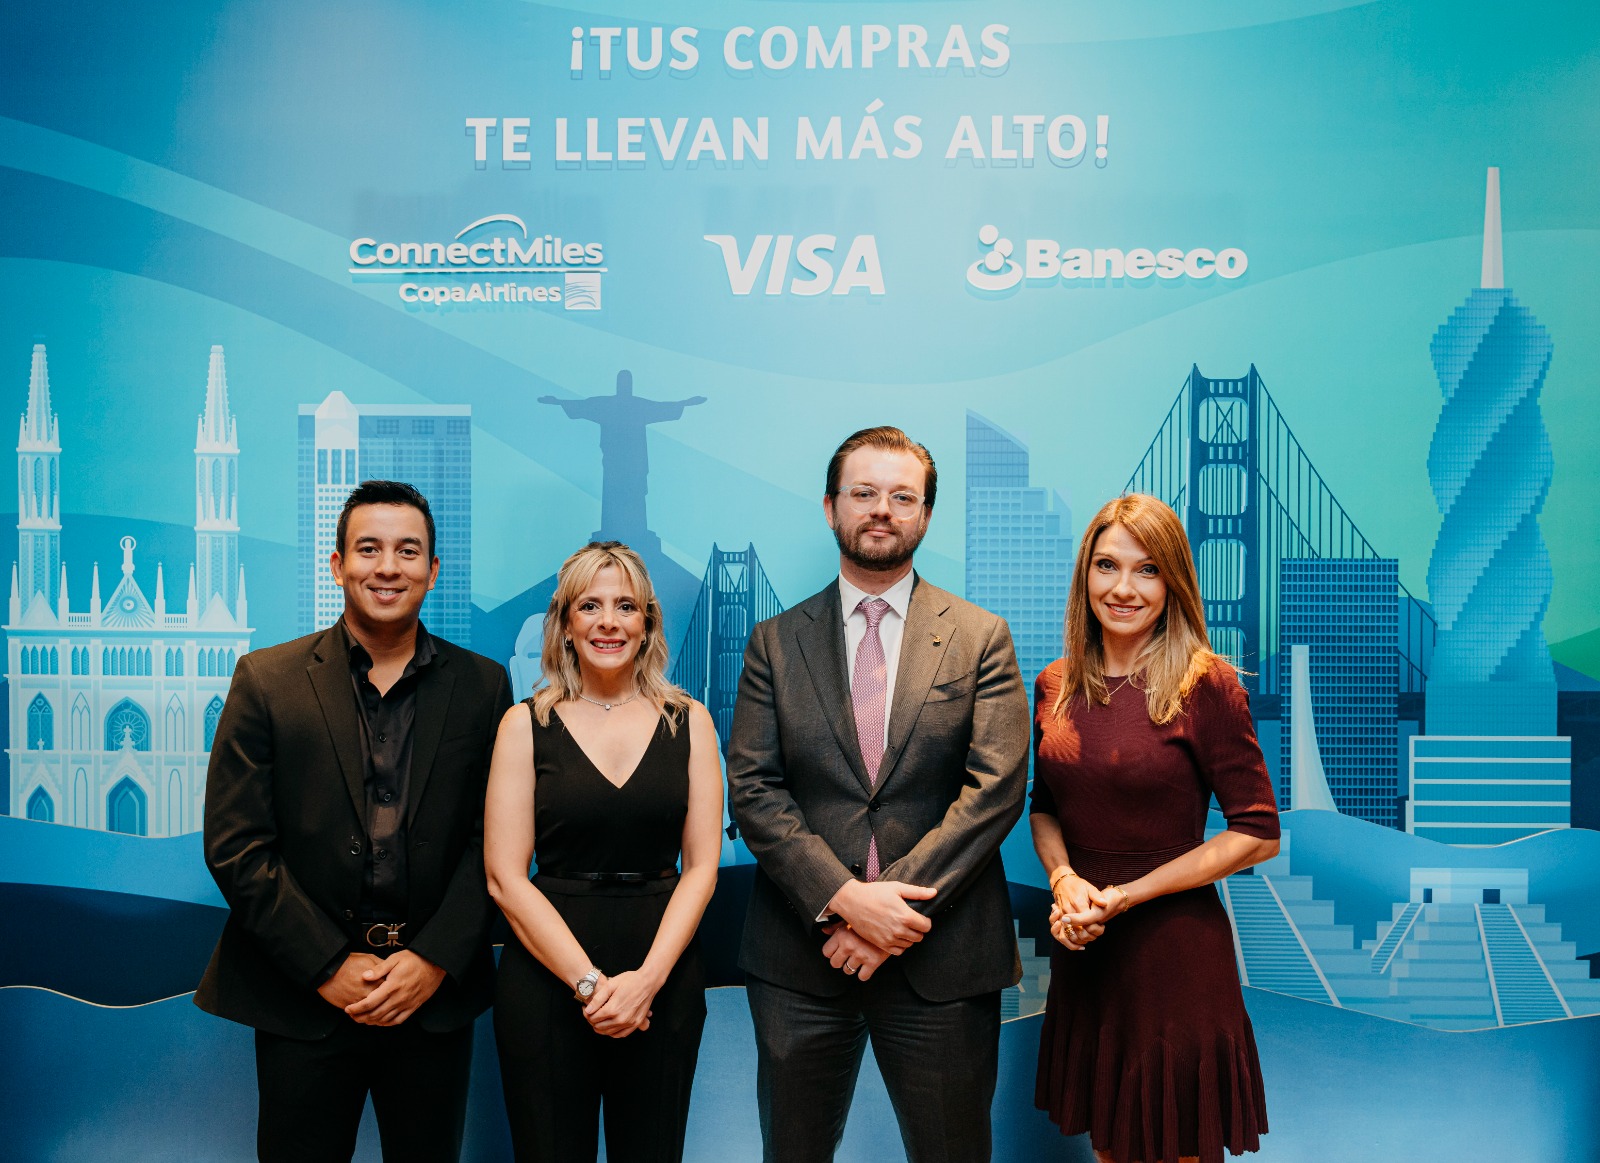 Banesco y Copa Airlines se asocian para lanzar tarjeta Visa